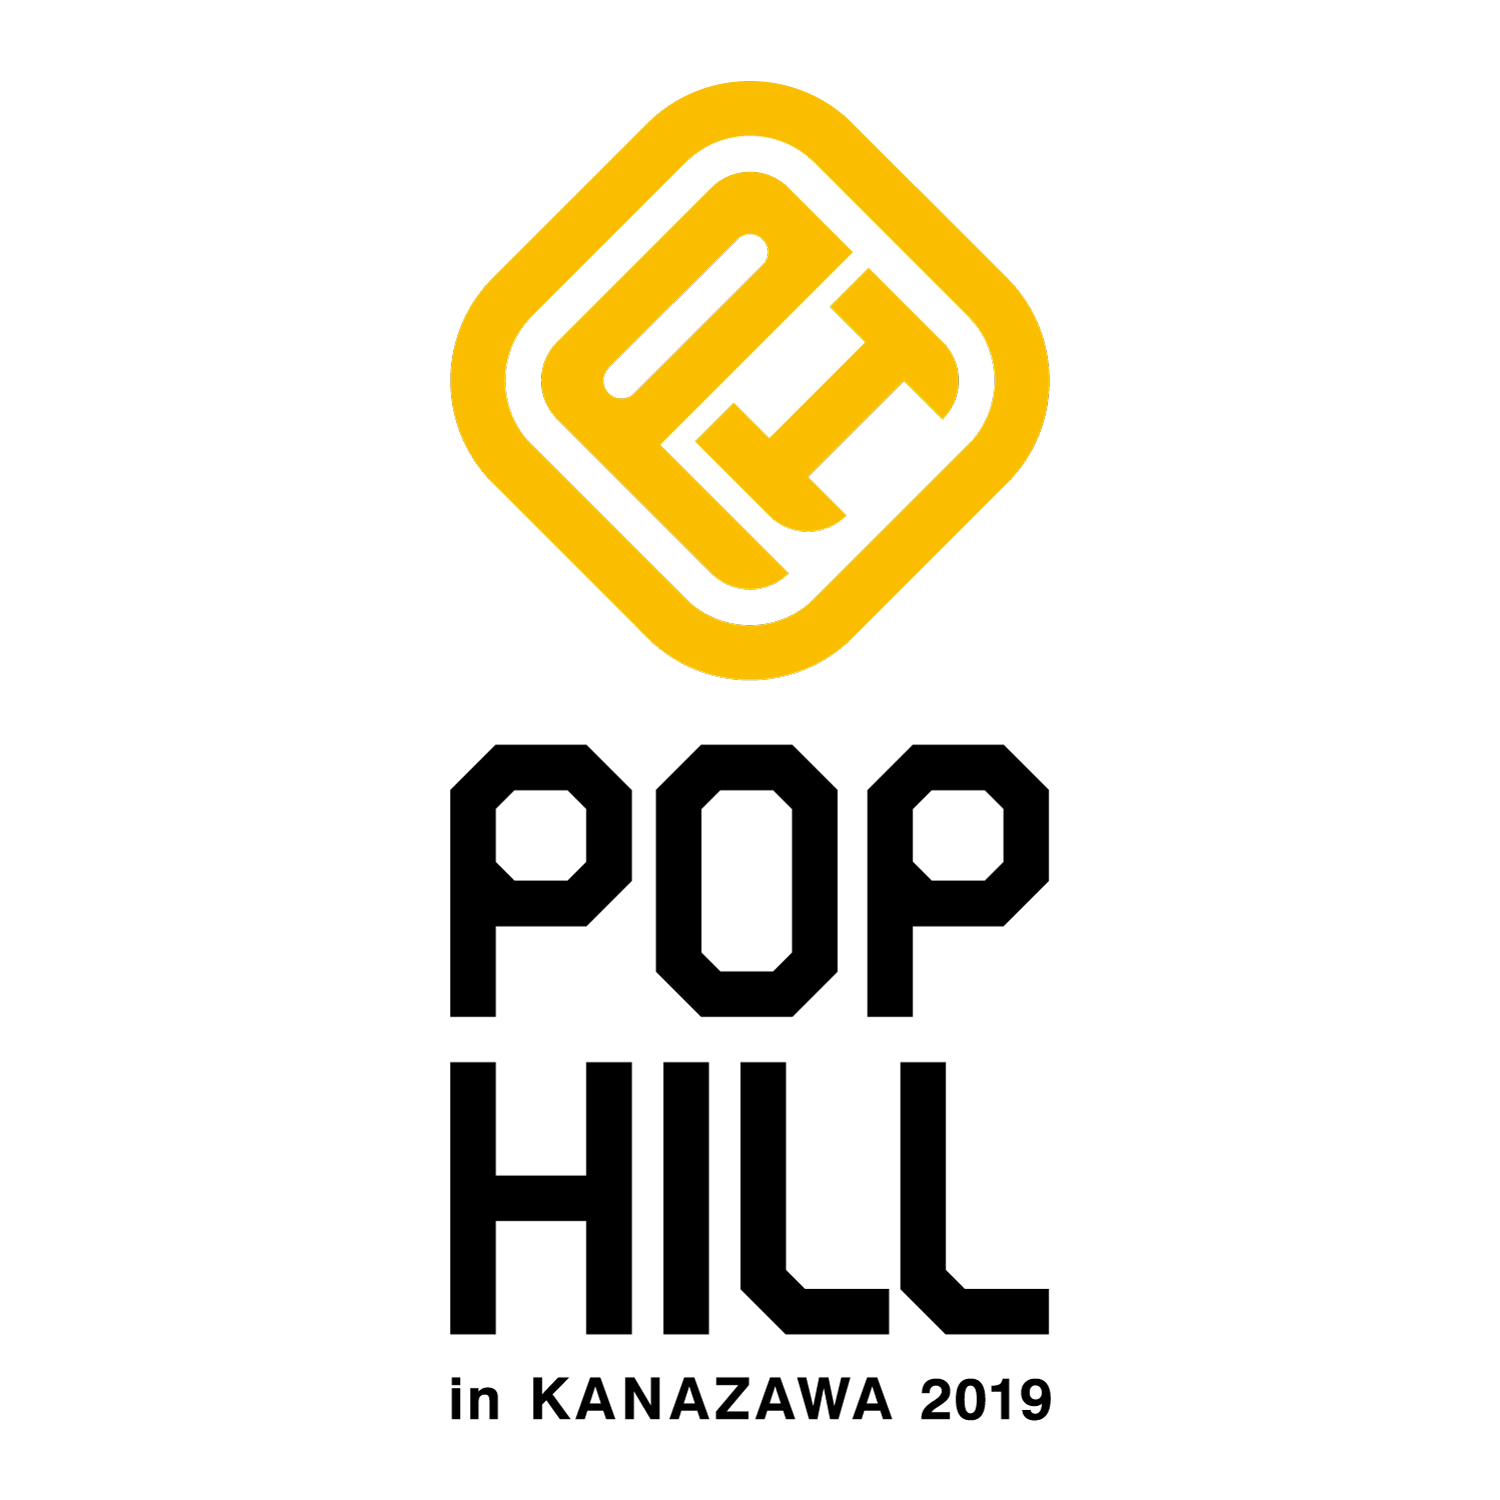 【石川】POP HILL 2019 in KANAZAWA (石川県産業展示館4号館)